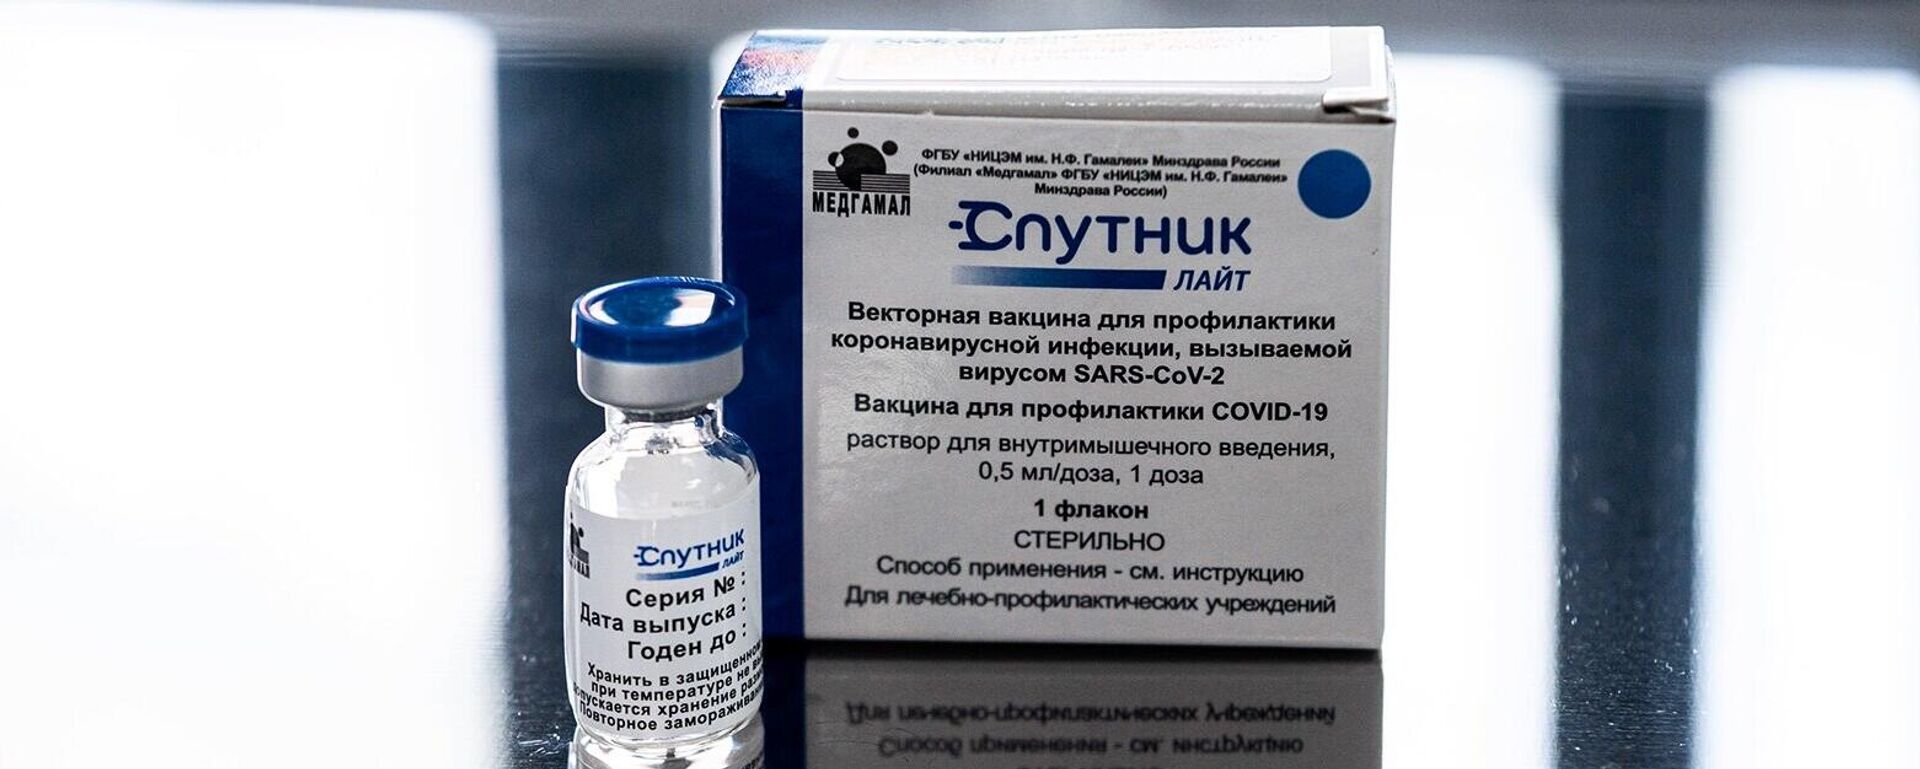 В миграционном центре в деревне Сахарово началась вакцинация трудовых мигрантов от COVID-19 - Sputnik Молдова, 1920, 27.09.2021